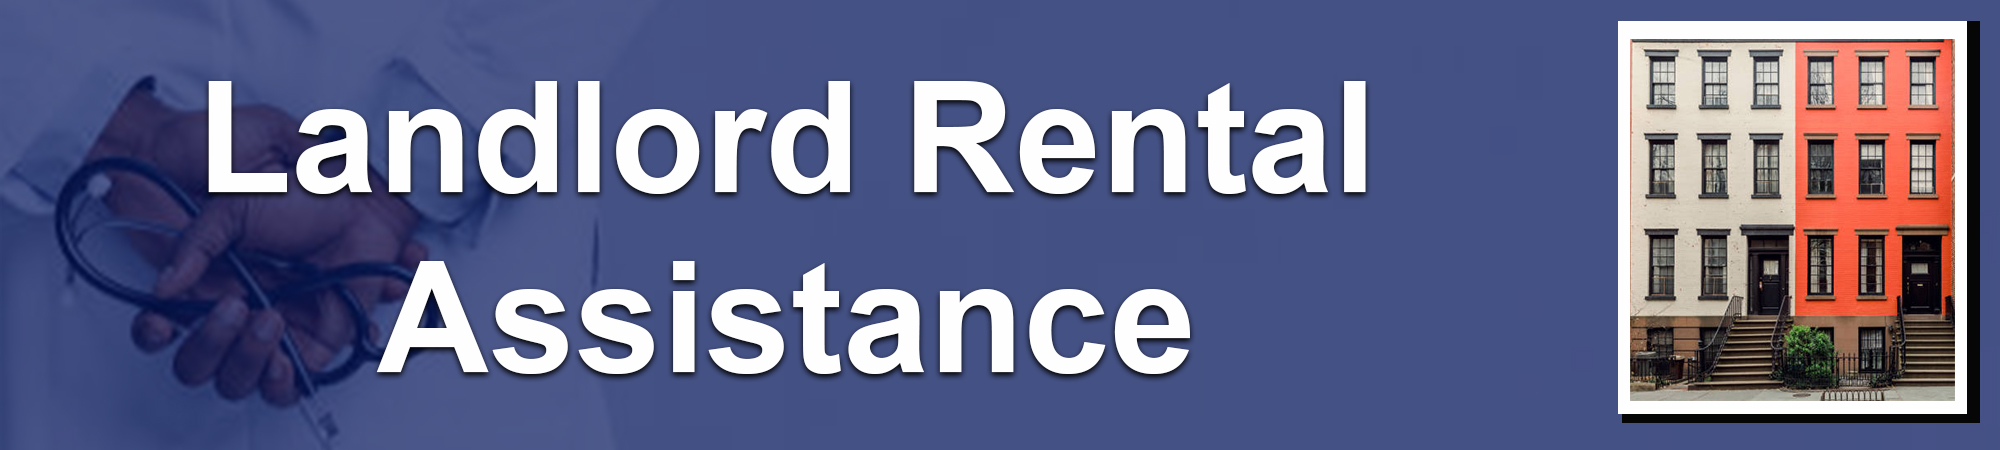 Landlord Rental Assistance